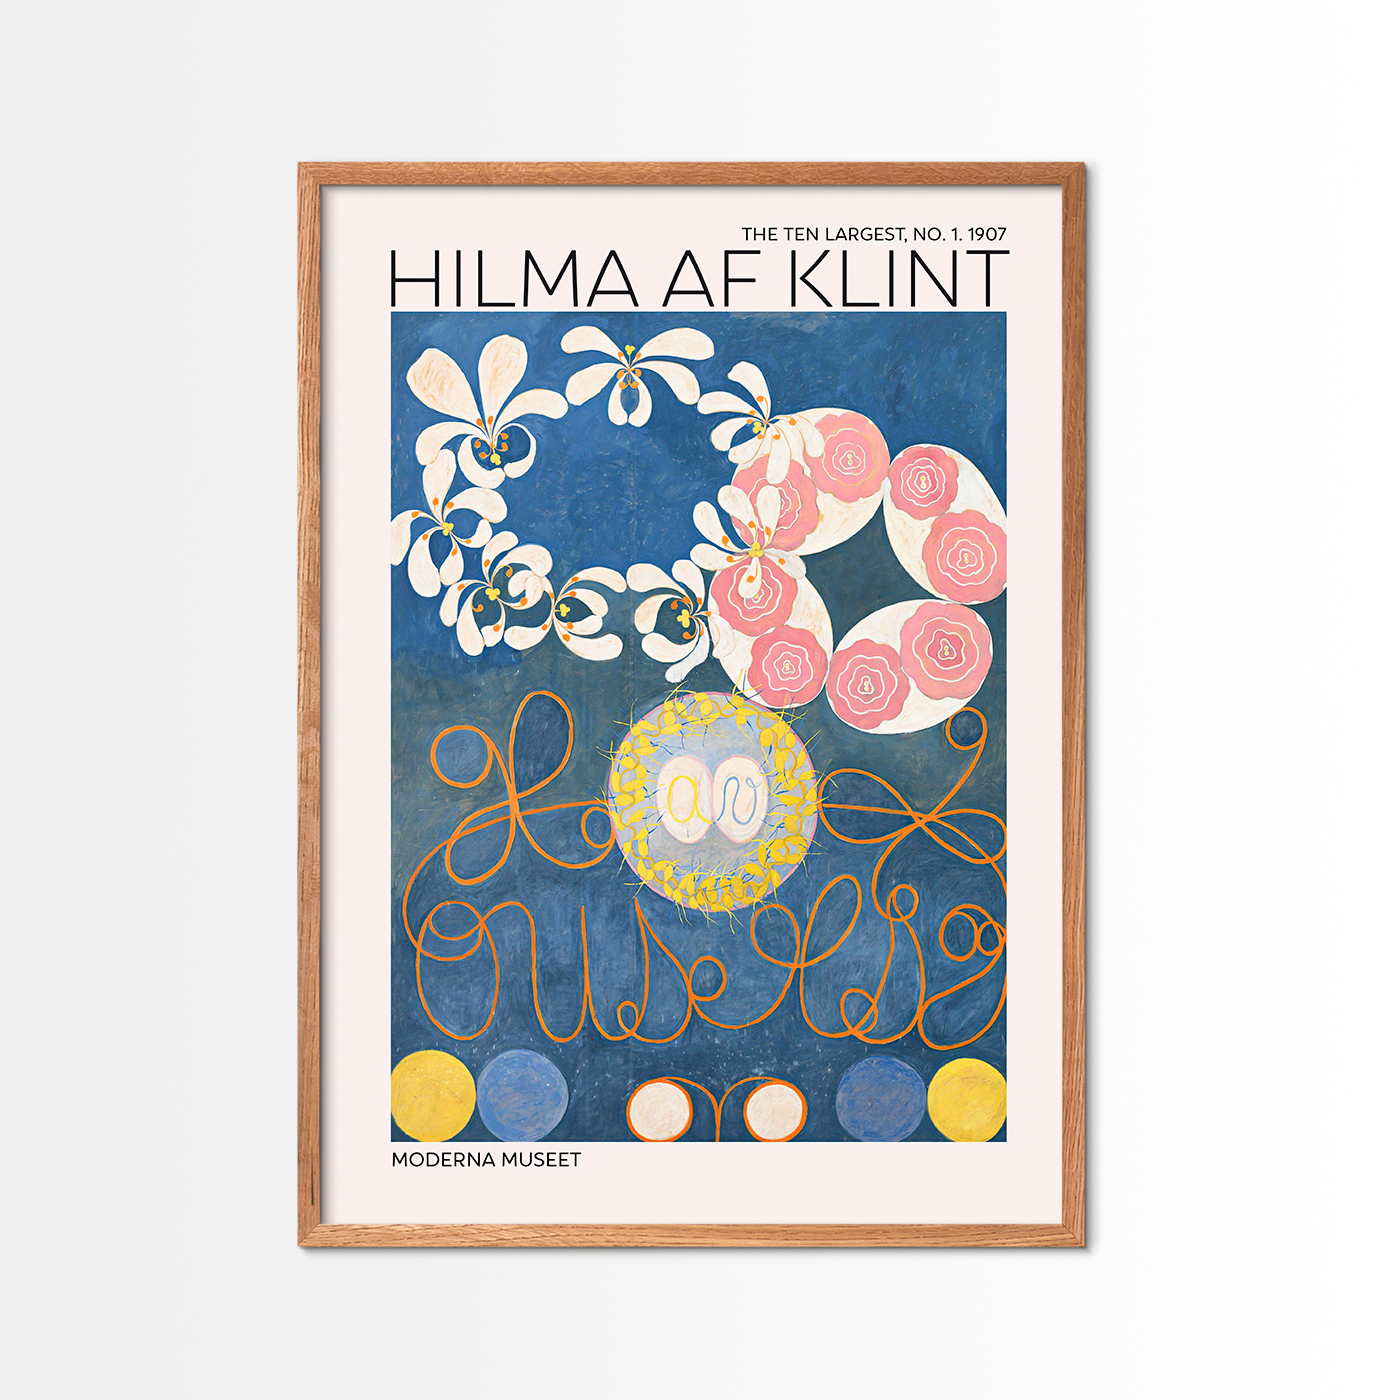 The Ten Largest No. 1 - Hilma Af Klint